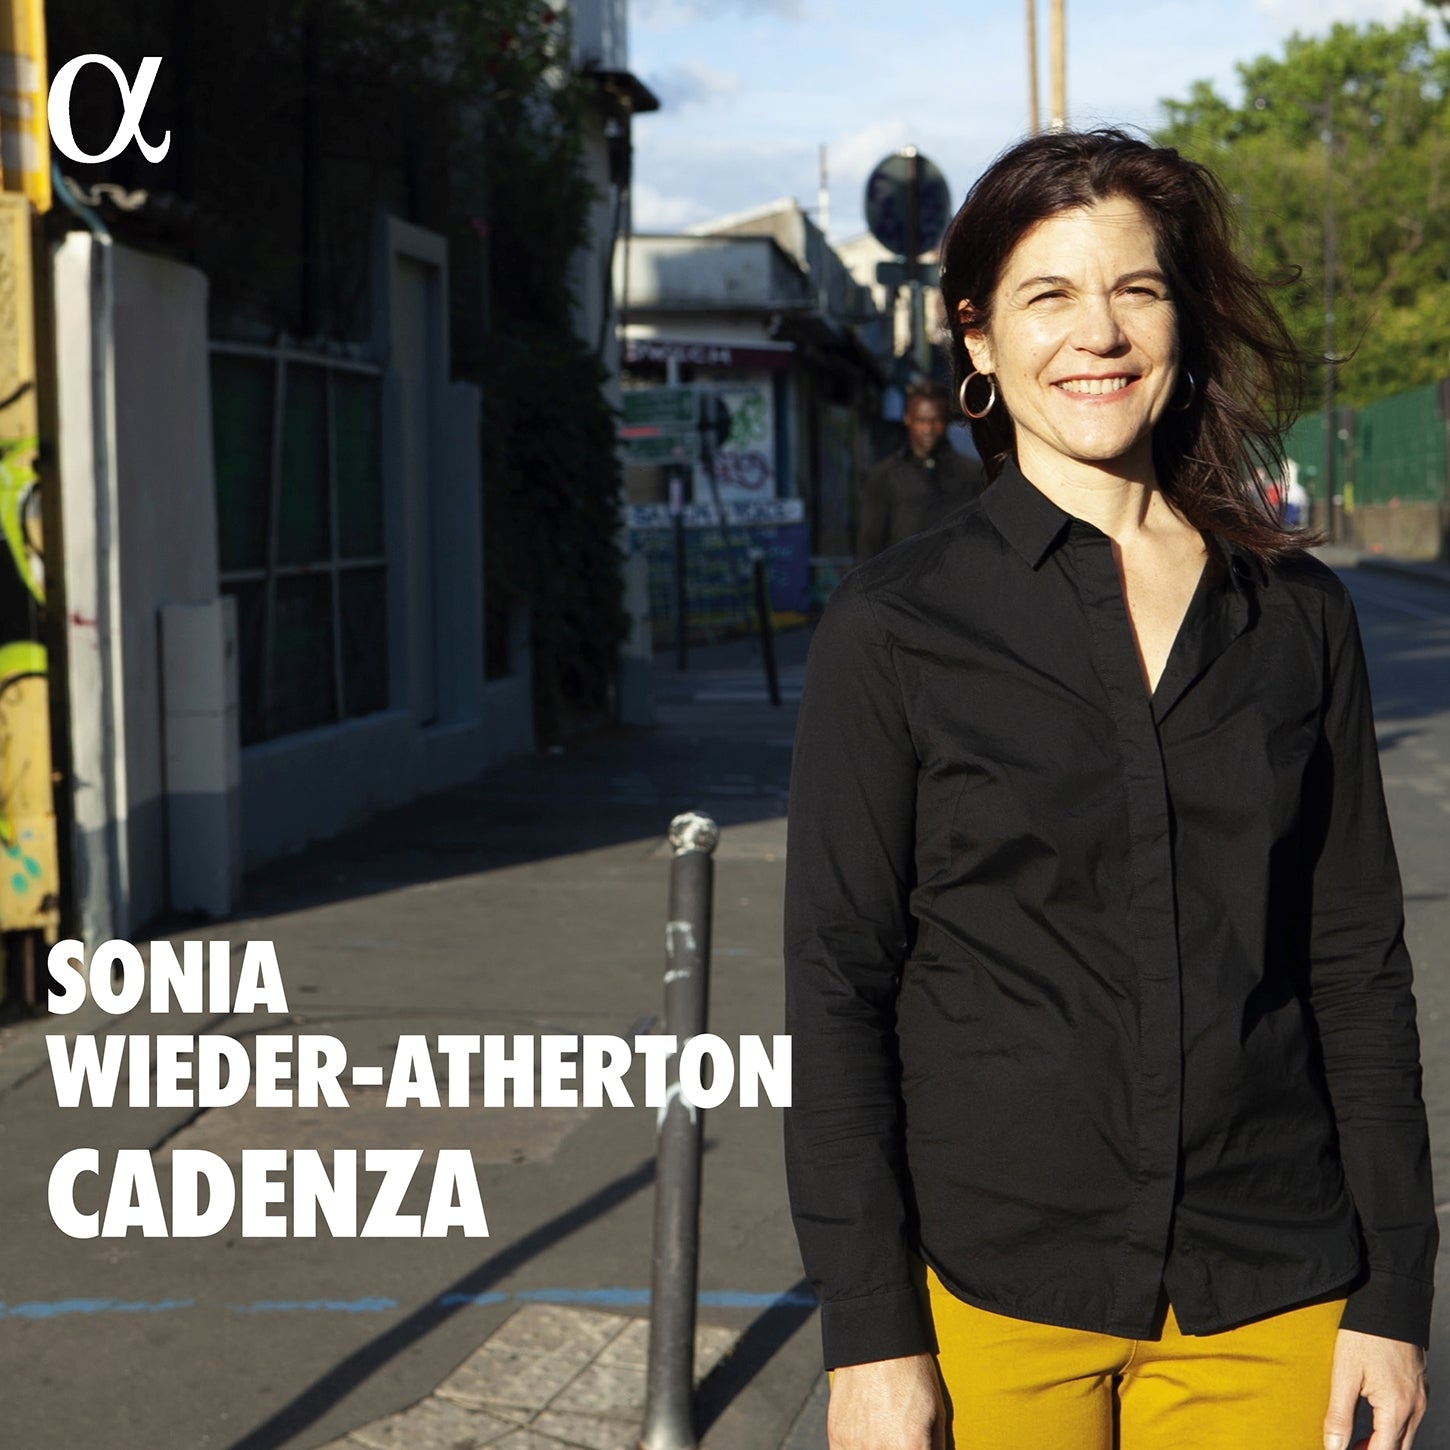 Cadenza / Sonia Wieder-Atherton